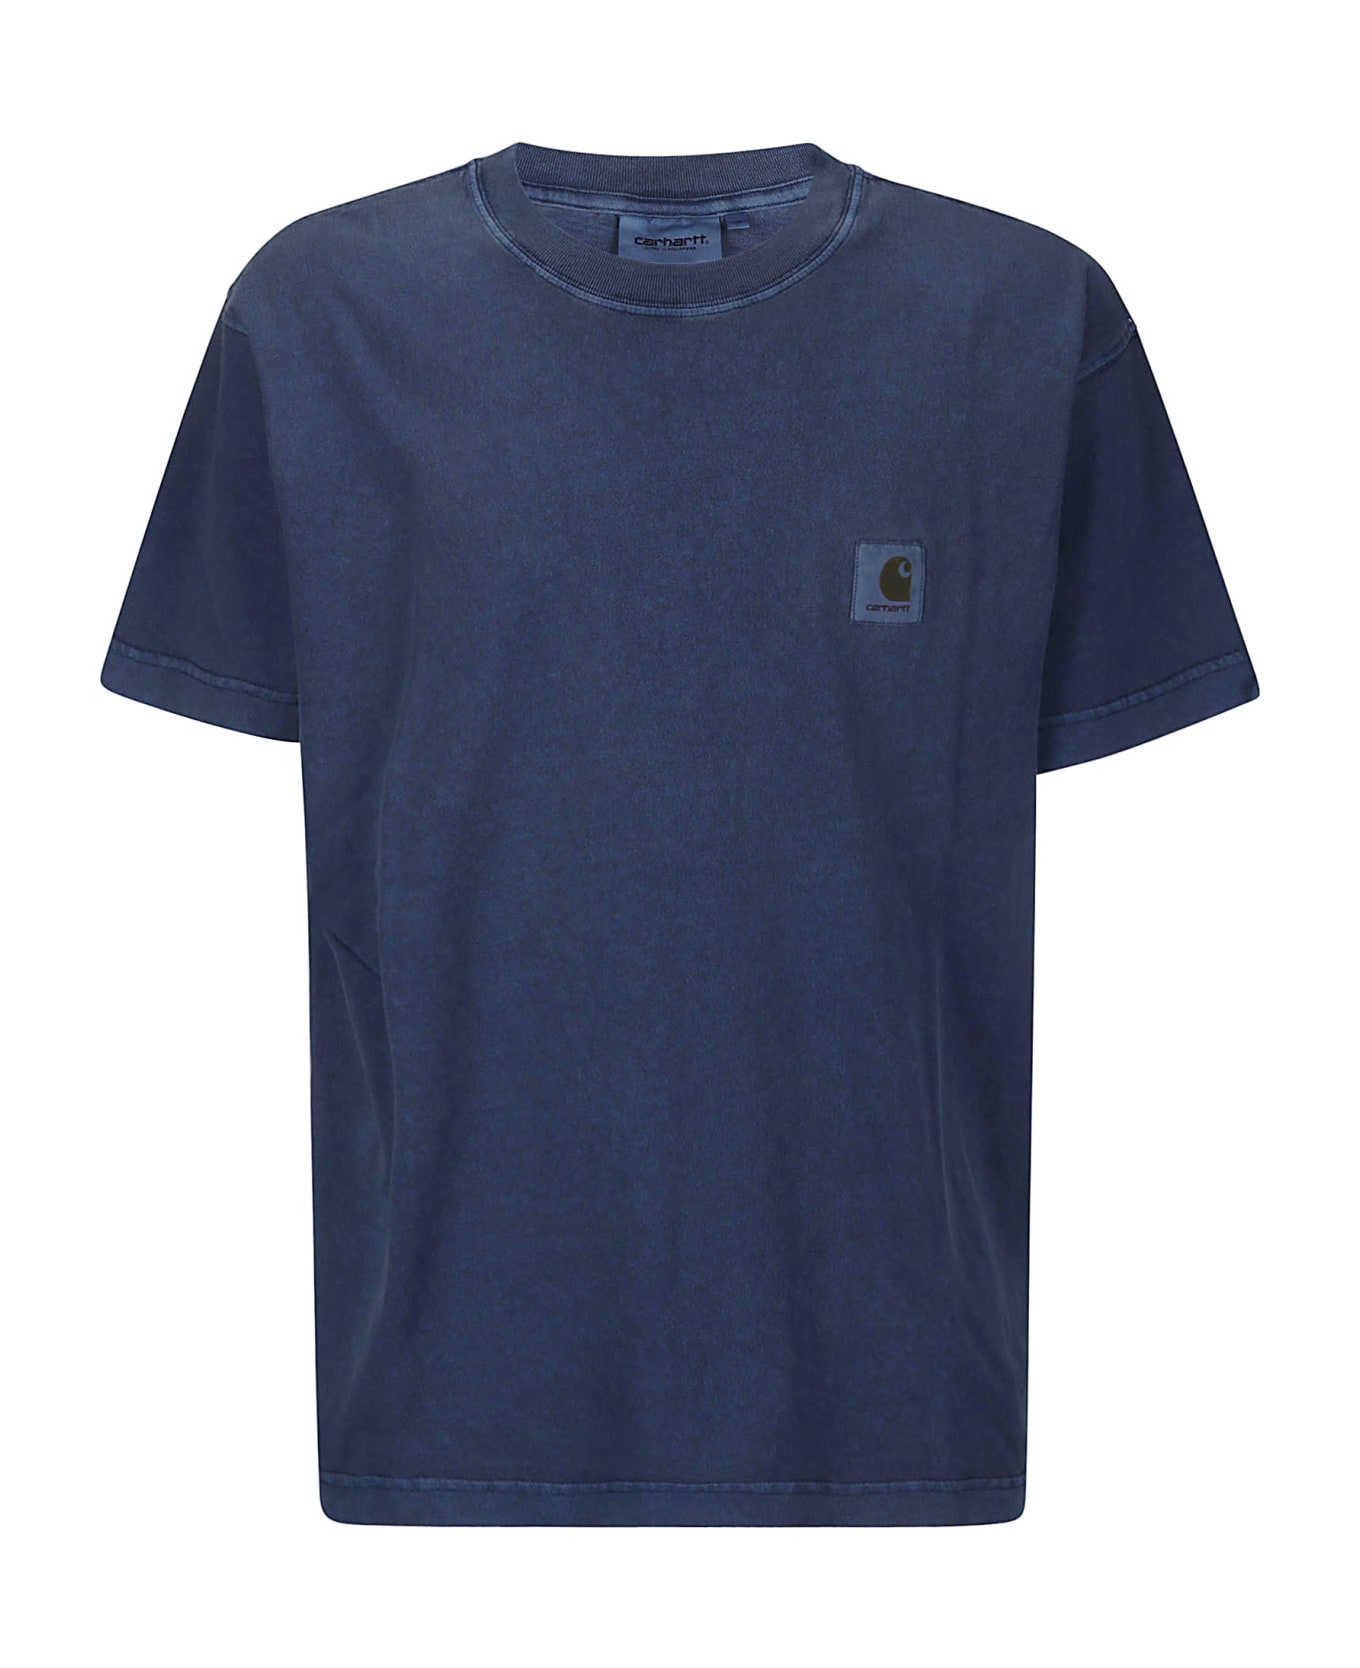 Carhartt S/s Nelson T-shirt Cotton Single Jersey - ELDER